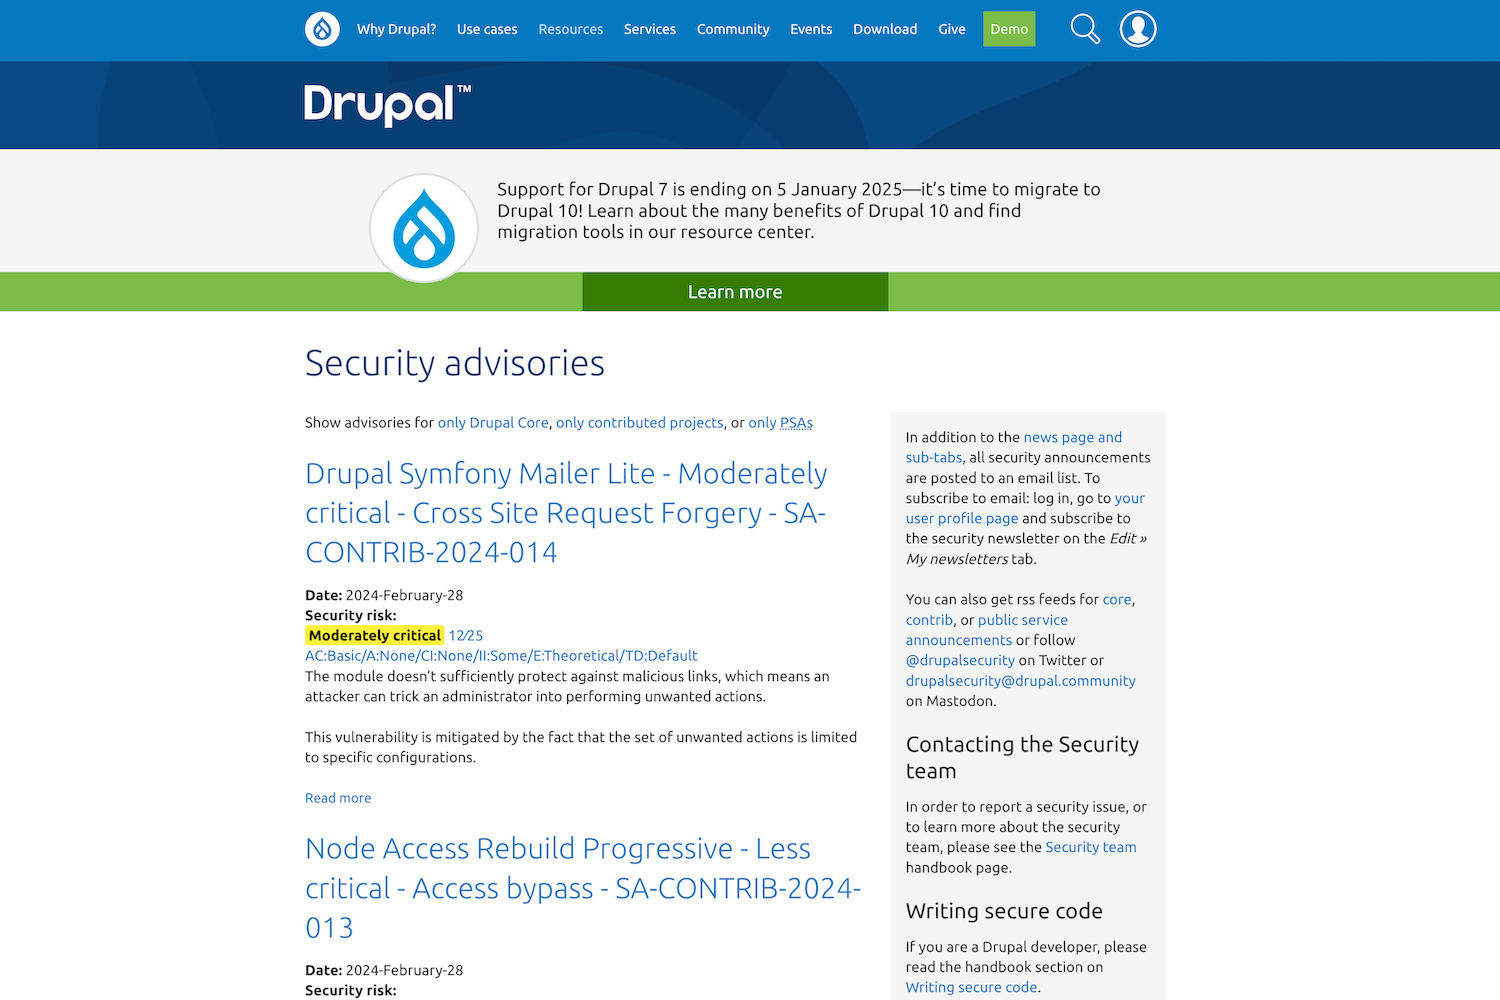 Na Drupal.org można znaleźć cenne porady i wiadomości na temat bezpieczeństwa strony internetowej.